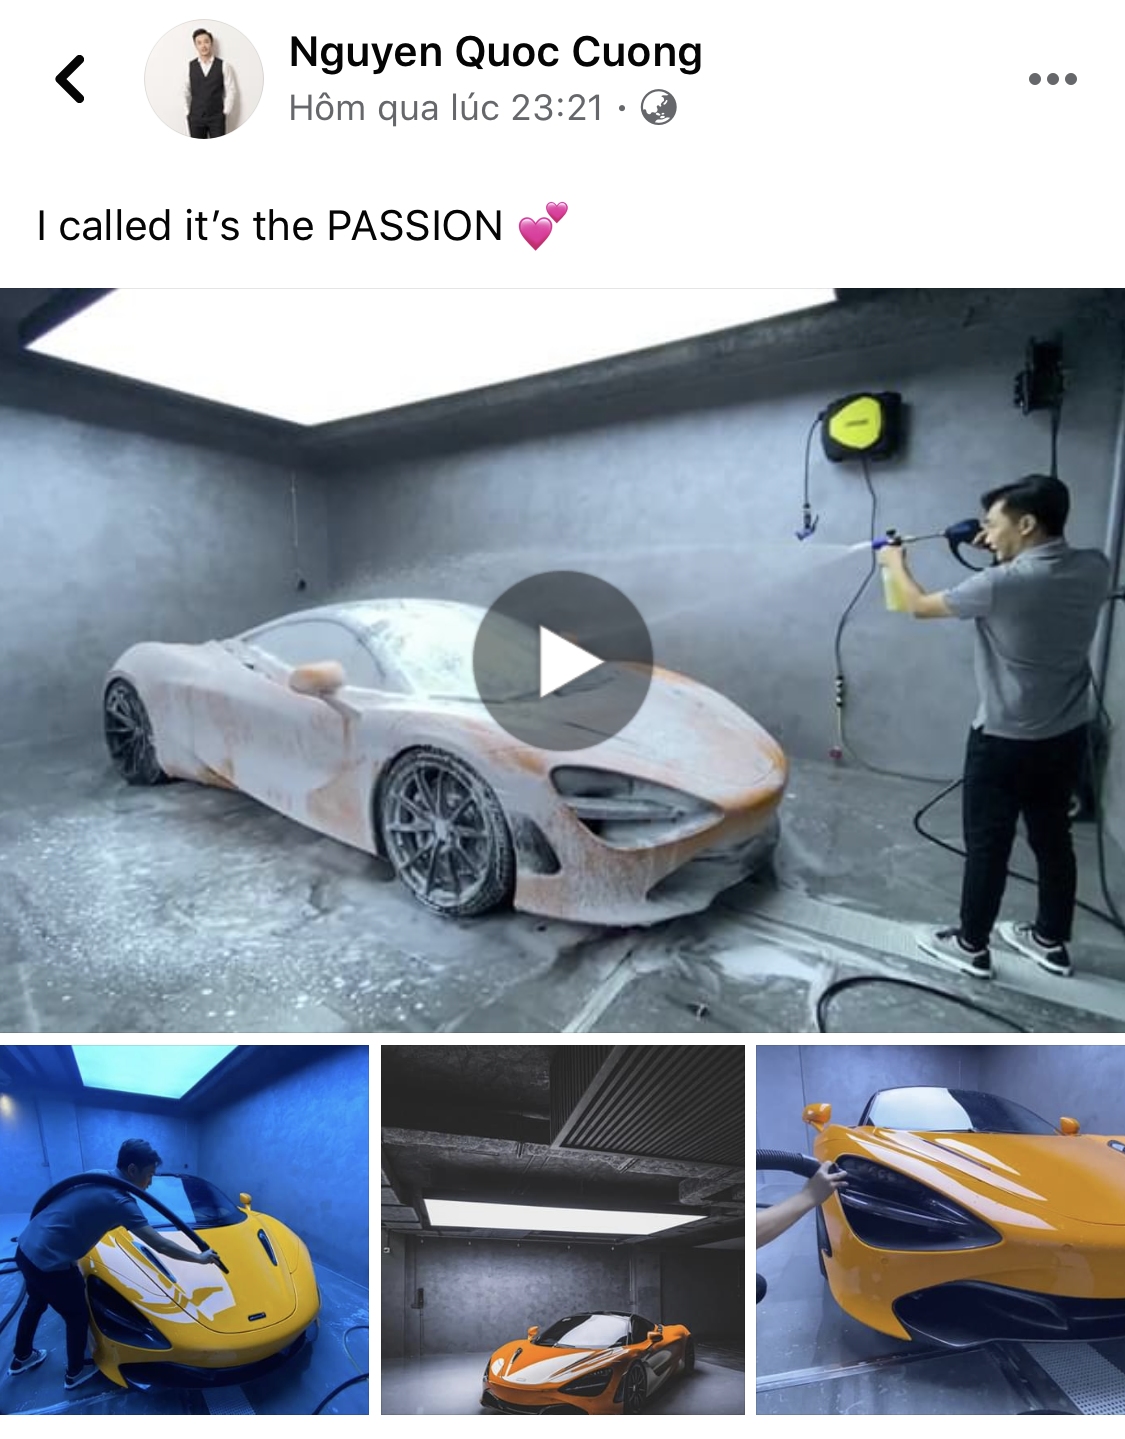 Xem doanh nhân Nguyễn Quốc Cường tự rửa siêu xe McLaren trong garage bạc tỷ, lên ảnh như nước ngoài - Ảnh 2.